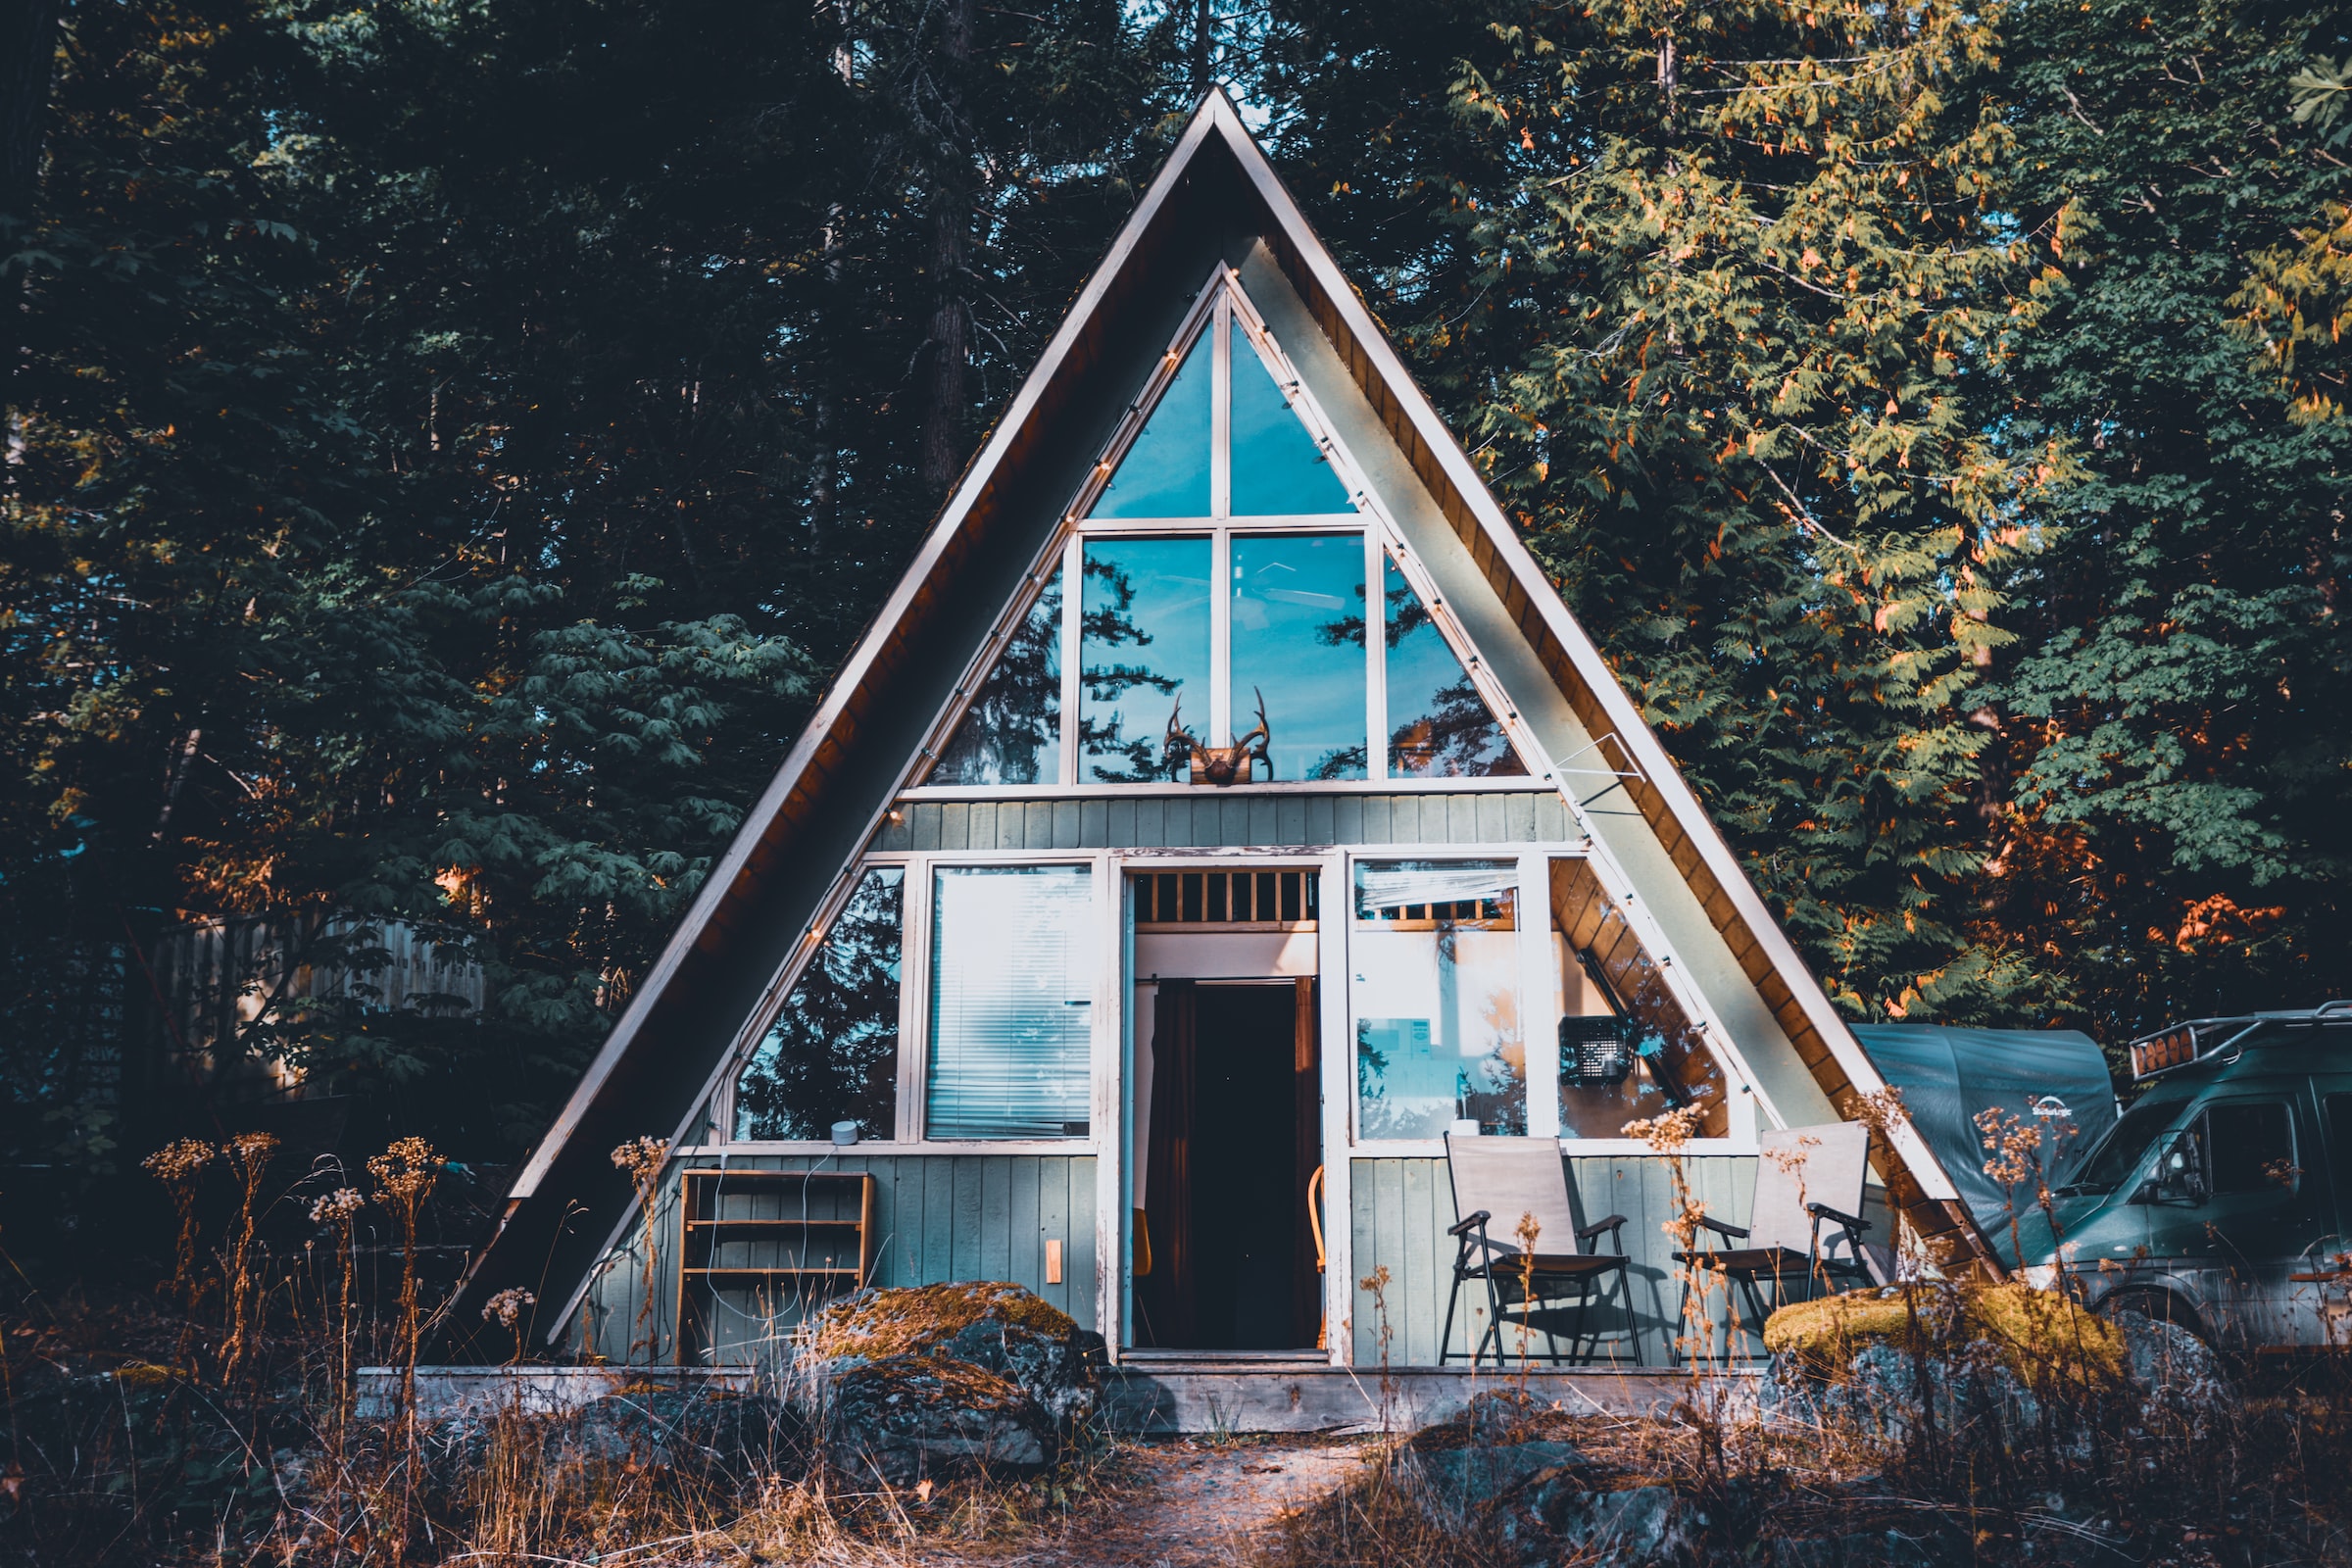 Hütte/ Ferienwohnung im Wald